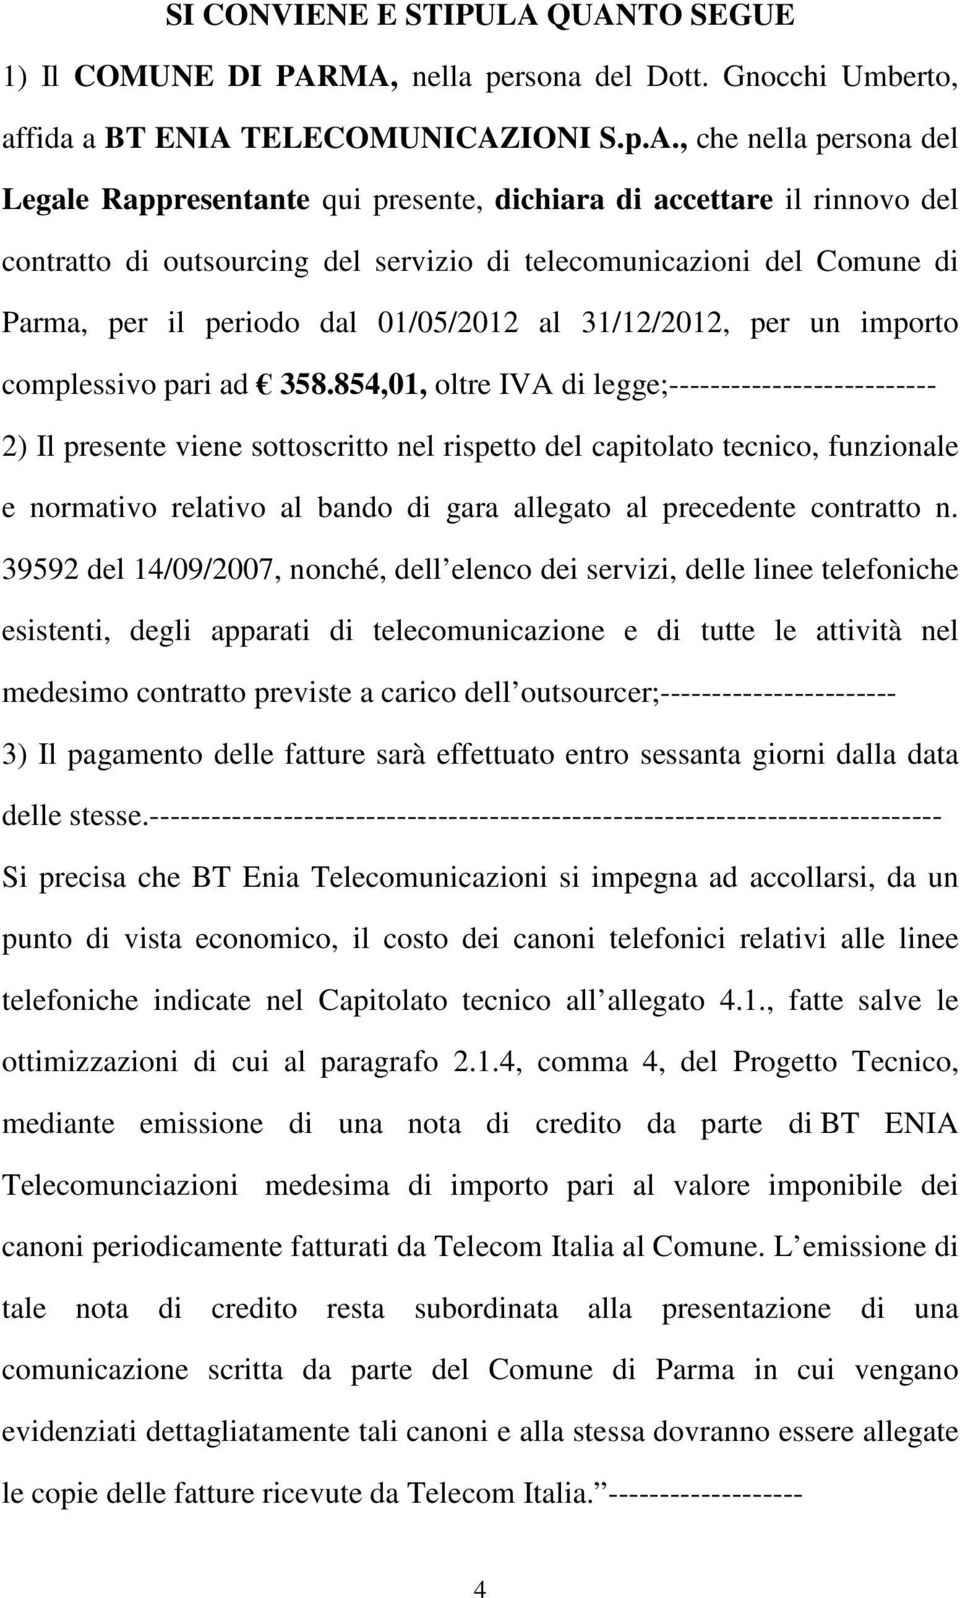 il rinnovo del contratto di outsourcing del servizio di telecomunicazioni del Comune di Parma, per il periodo dal 01/05/2012 al 31/12/2012, per un importo complessivo pari ad 358.